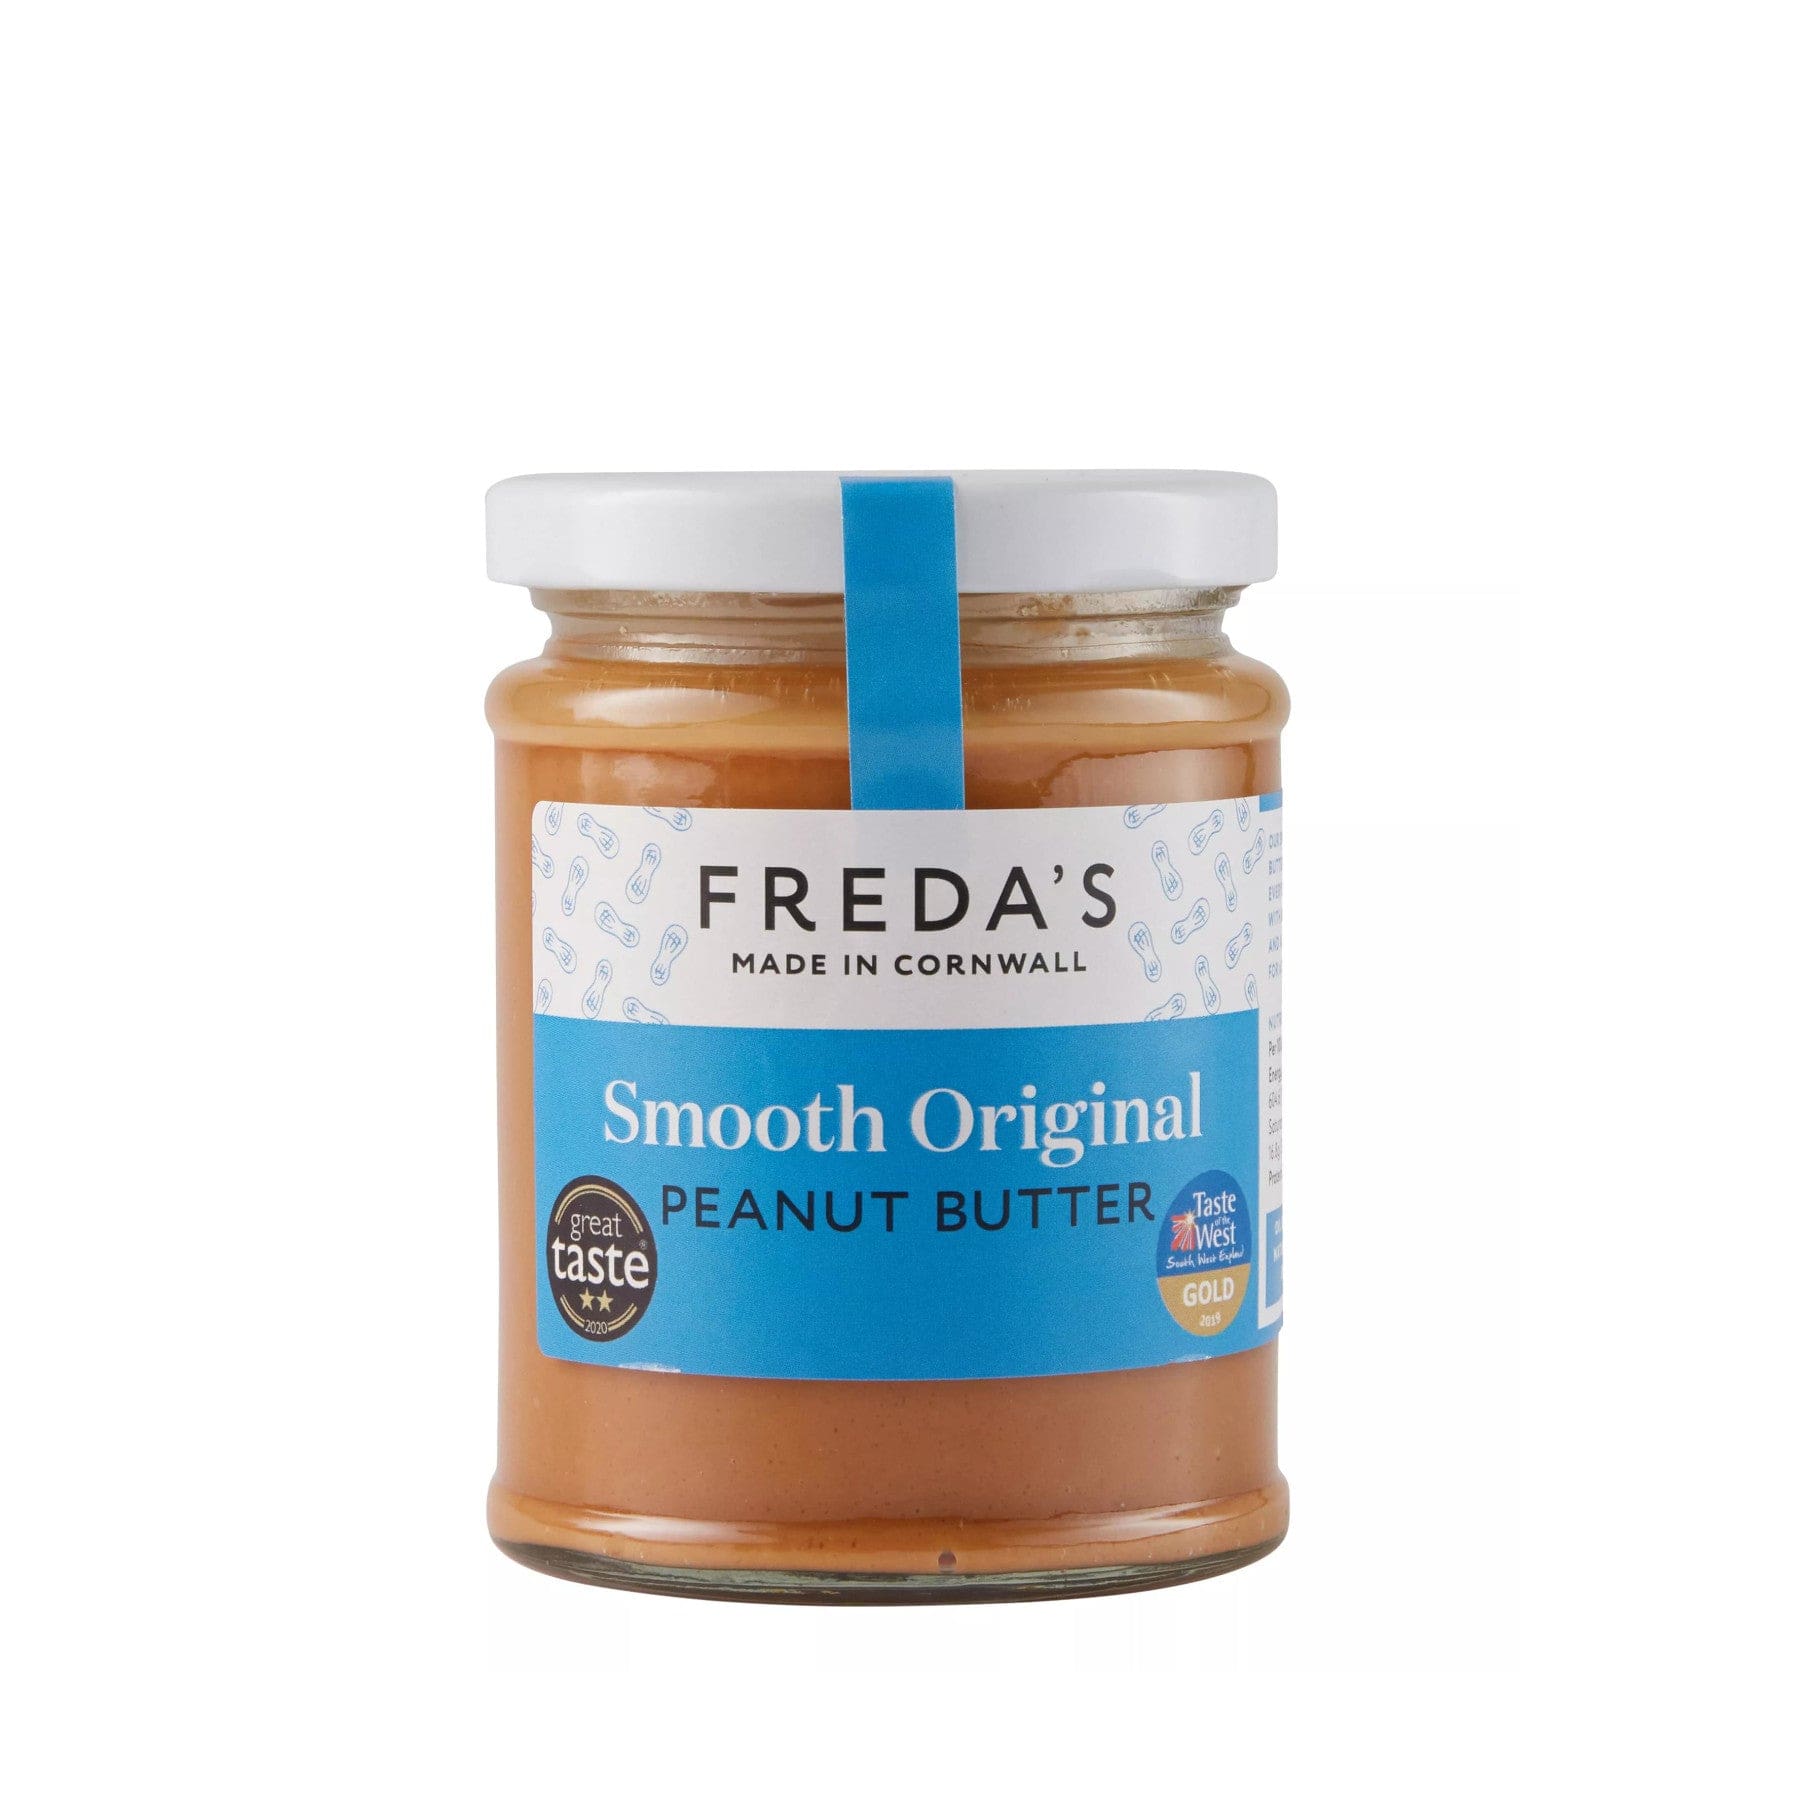 Freda's Smooth Original Peanut Butter jar with blue label, Great Taste award emblem on white background